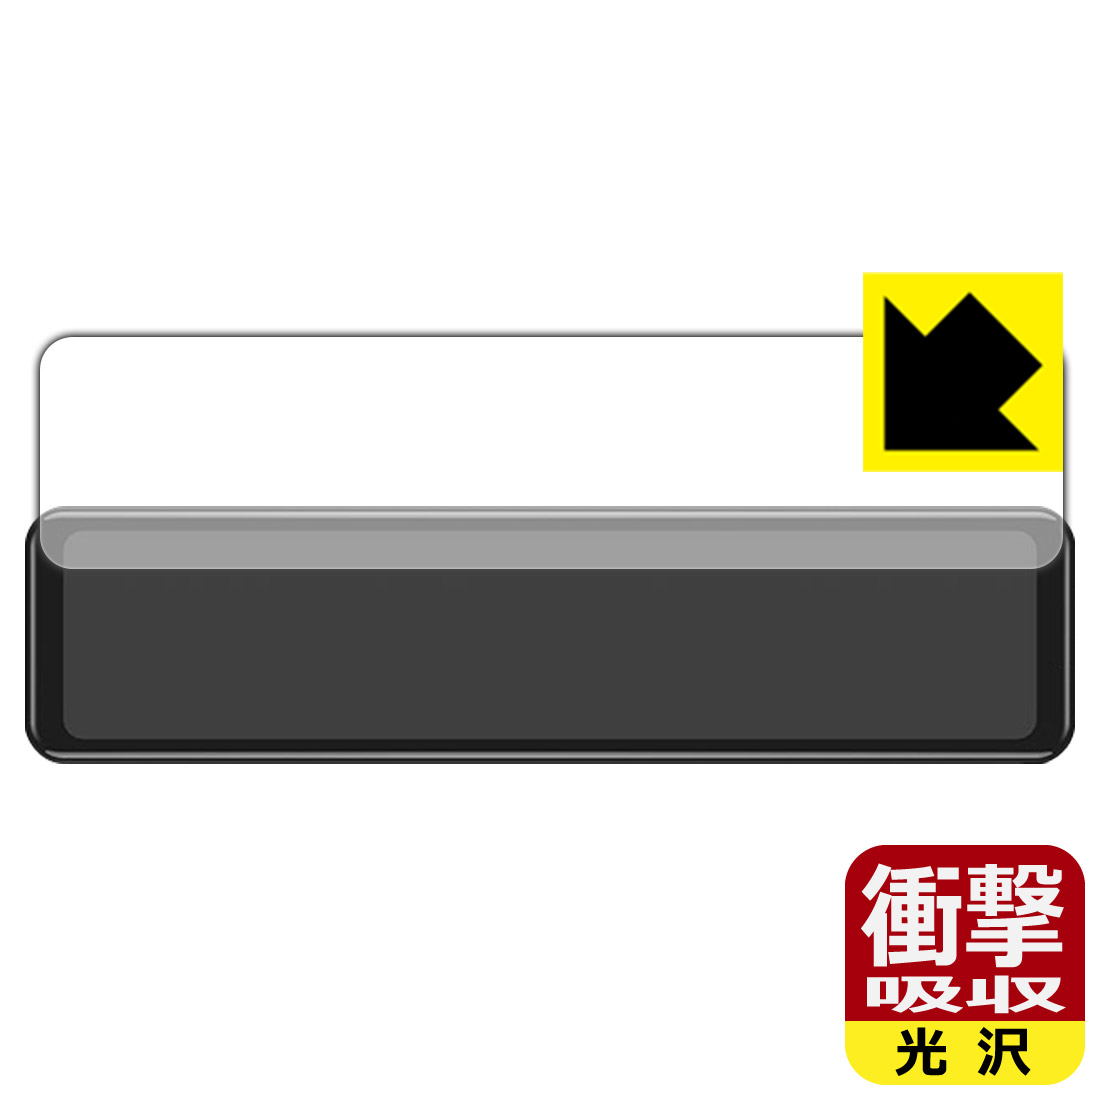 衝撃吸収【光沢】保護フィルム MAXWIN 11.88インチ デジタルルームミラー MDR-J001R 日本製 自社製造直販